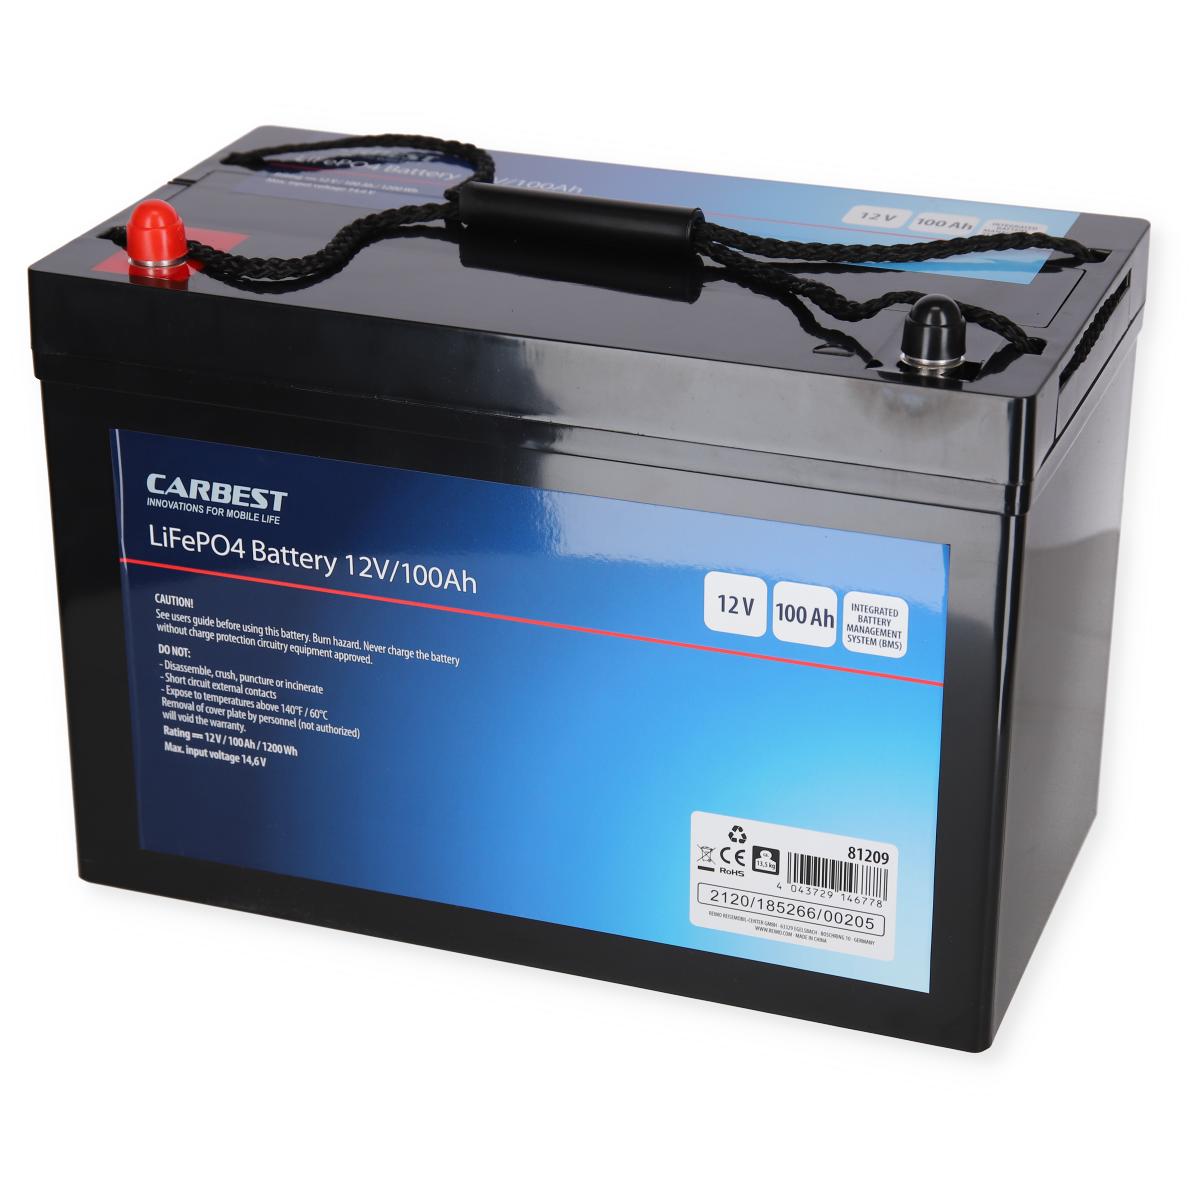 Carbest LiFePO4 Batterie Li100BH6 - Untersitz-Batterie VW T6.1 / T6 / T5, Lithium Batterie, LiFePo4, Elektrik für Wohnmobile, Batterien, Camping-Shop